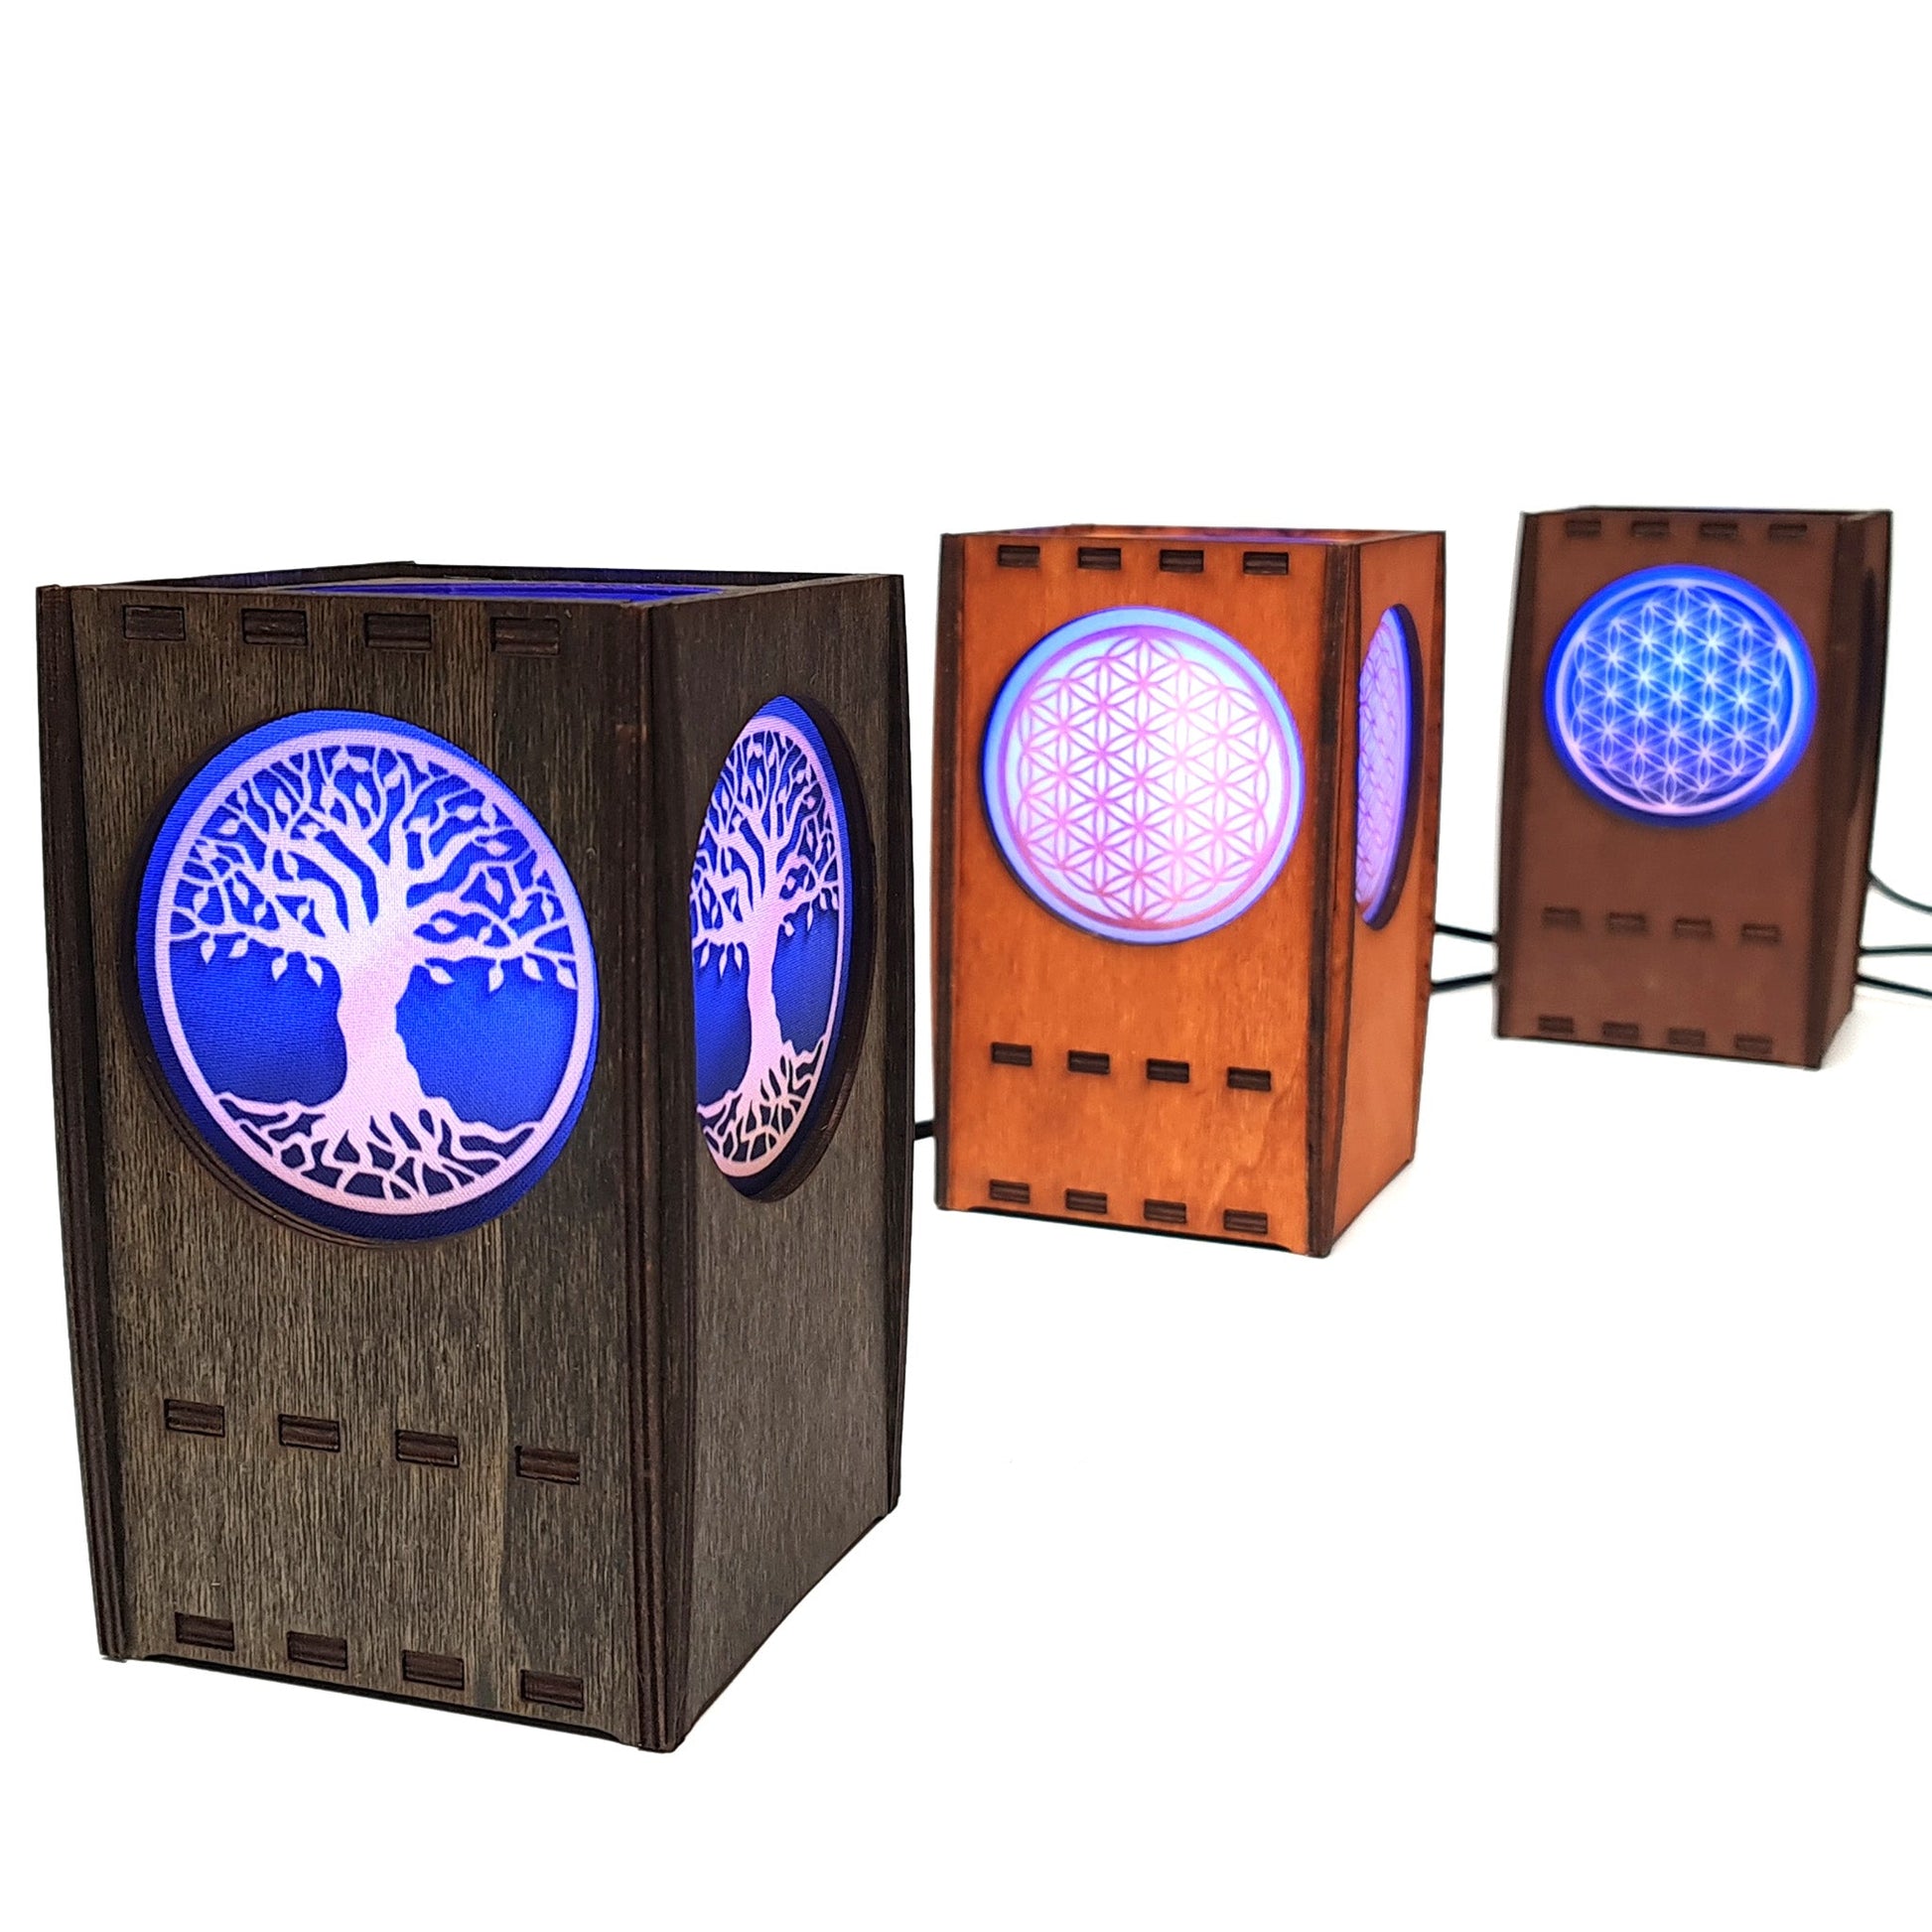 Tischlampe aus Holz mit 3 Symbolen - Nanino Design Onlineshop -